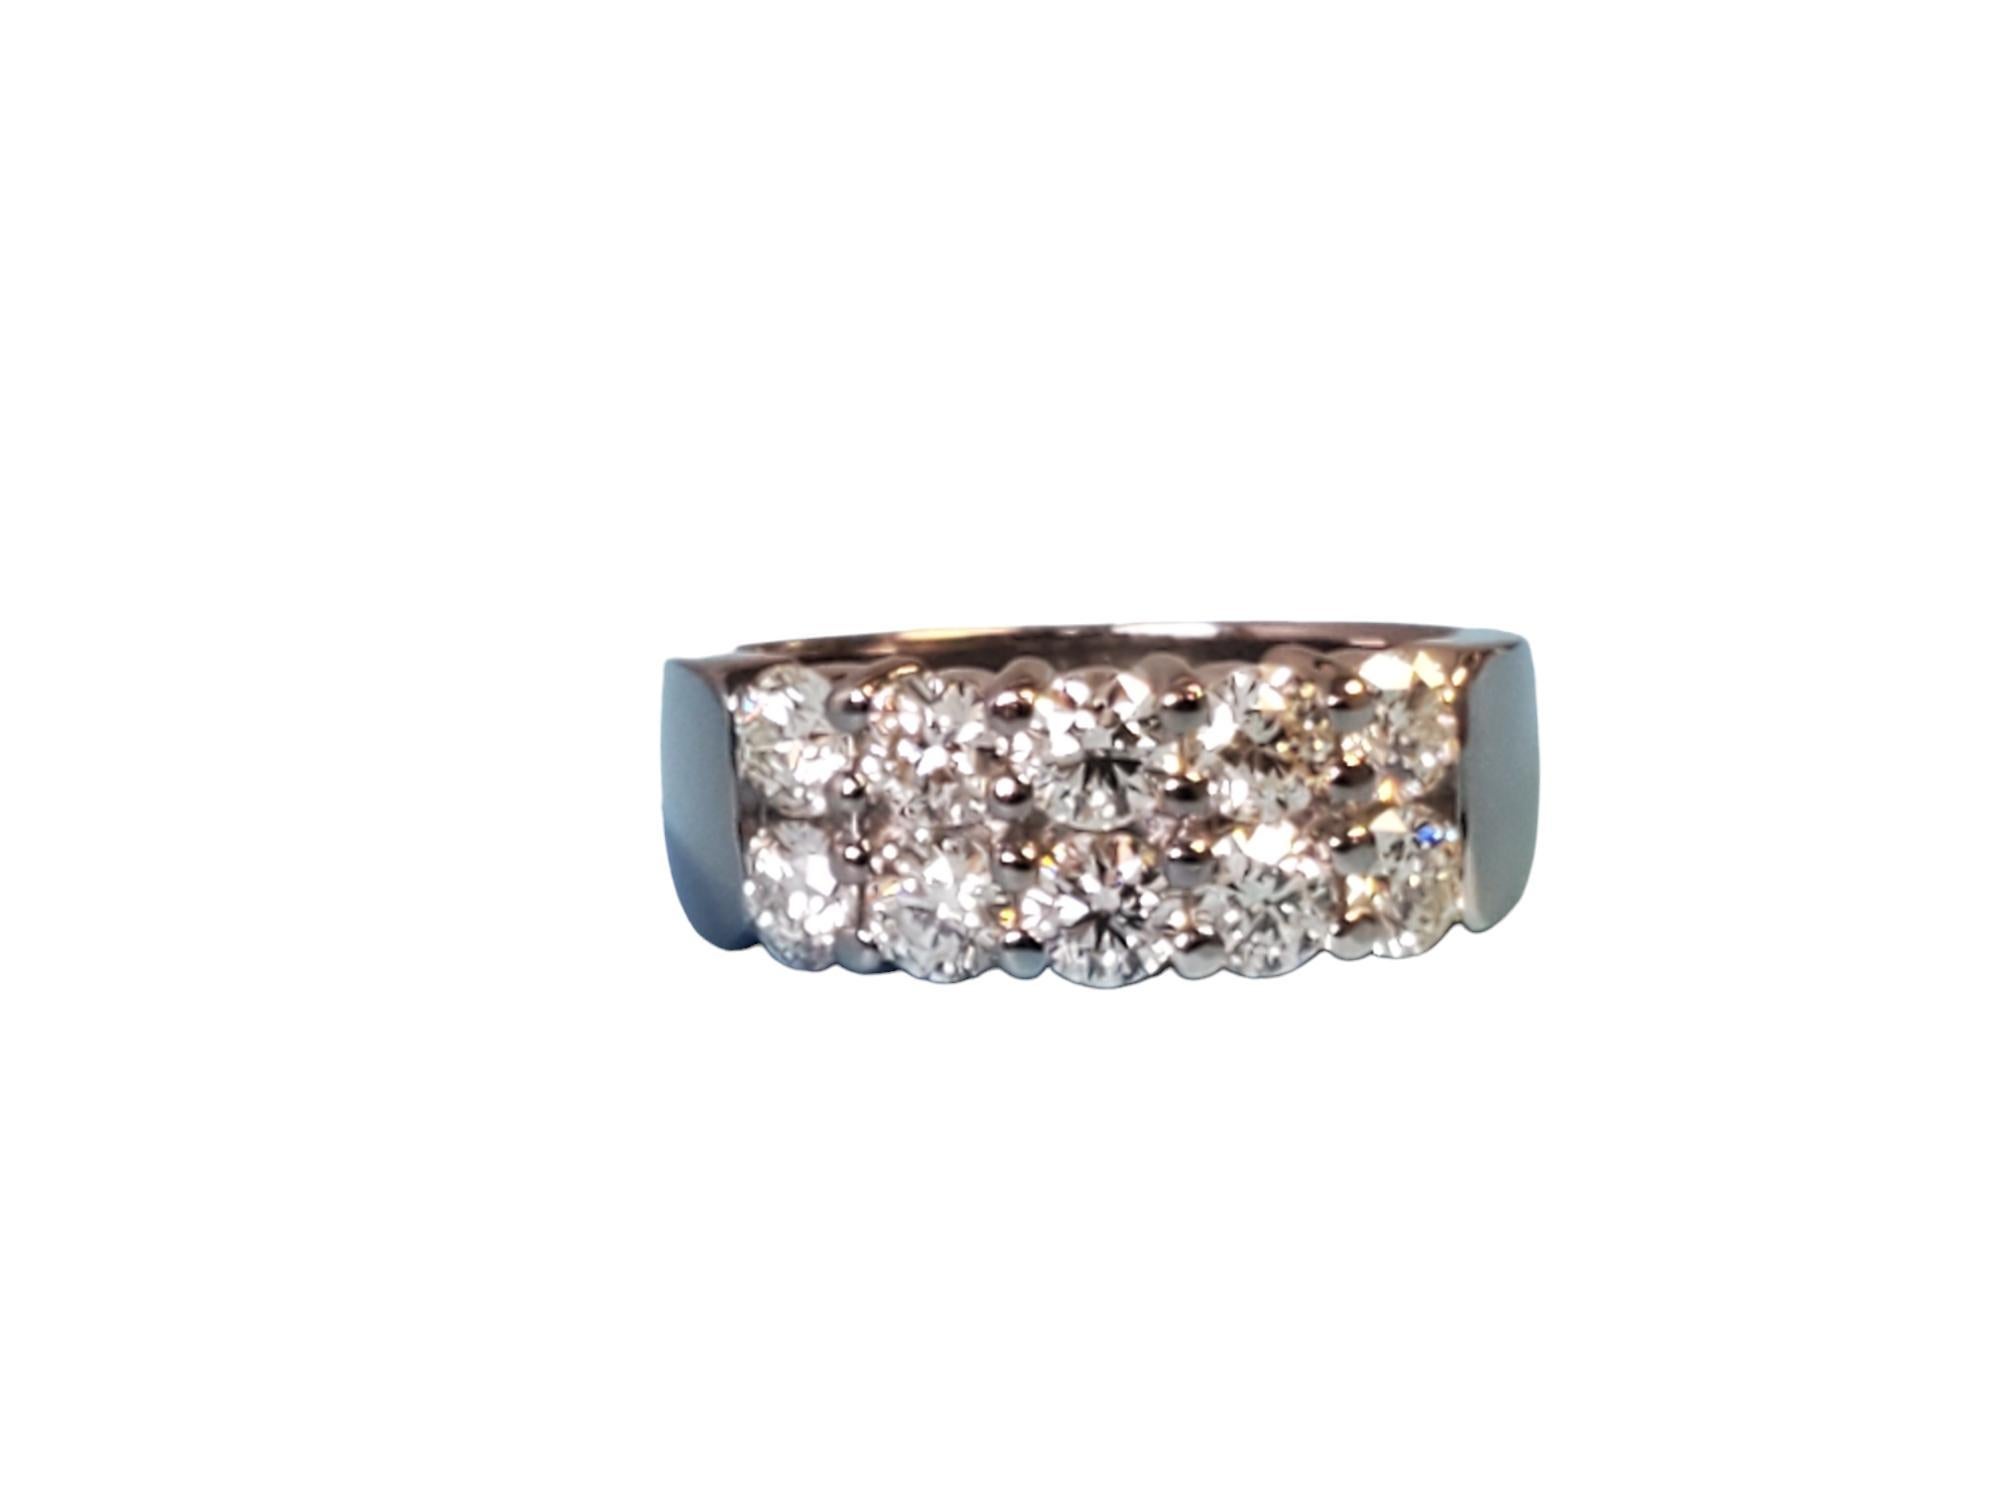 Estate HOF (Hearts on Fire) signiert Enchantment 18k Weißgold 2 Zeile Diamantband 1,50tcw. HOF ist bekannt für erstaunlich hochwertige Diamanten und Schmuckstücke. Sichern Sie sich diesen wunderschönen Ring noch heute. HOF ist sehr hoch im